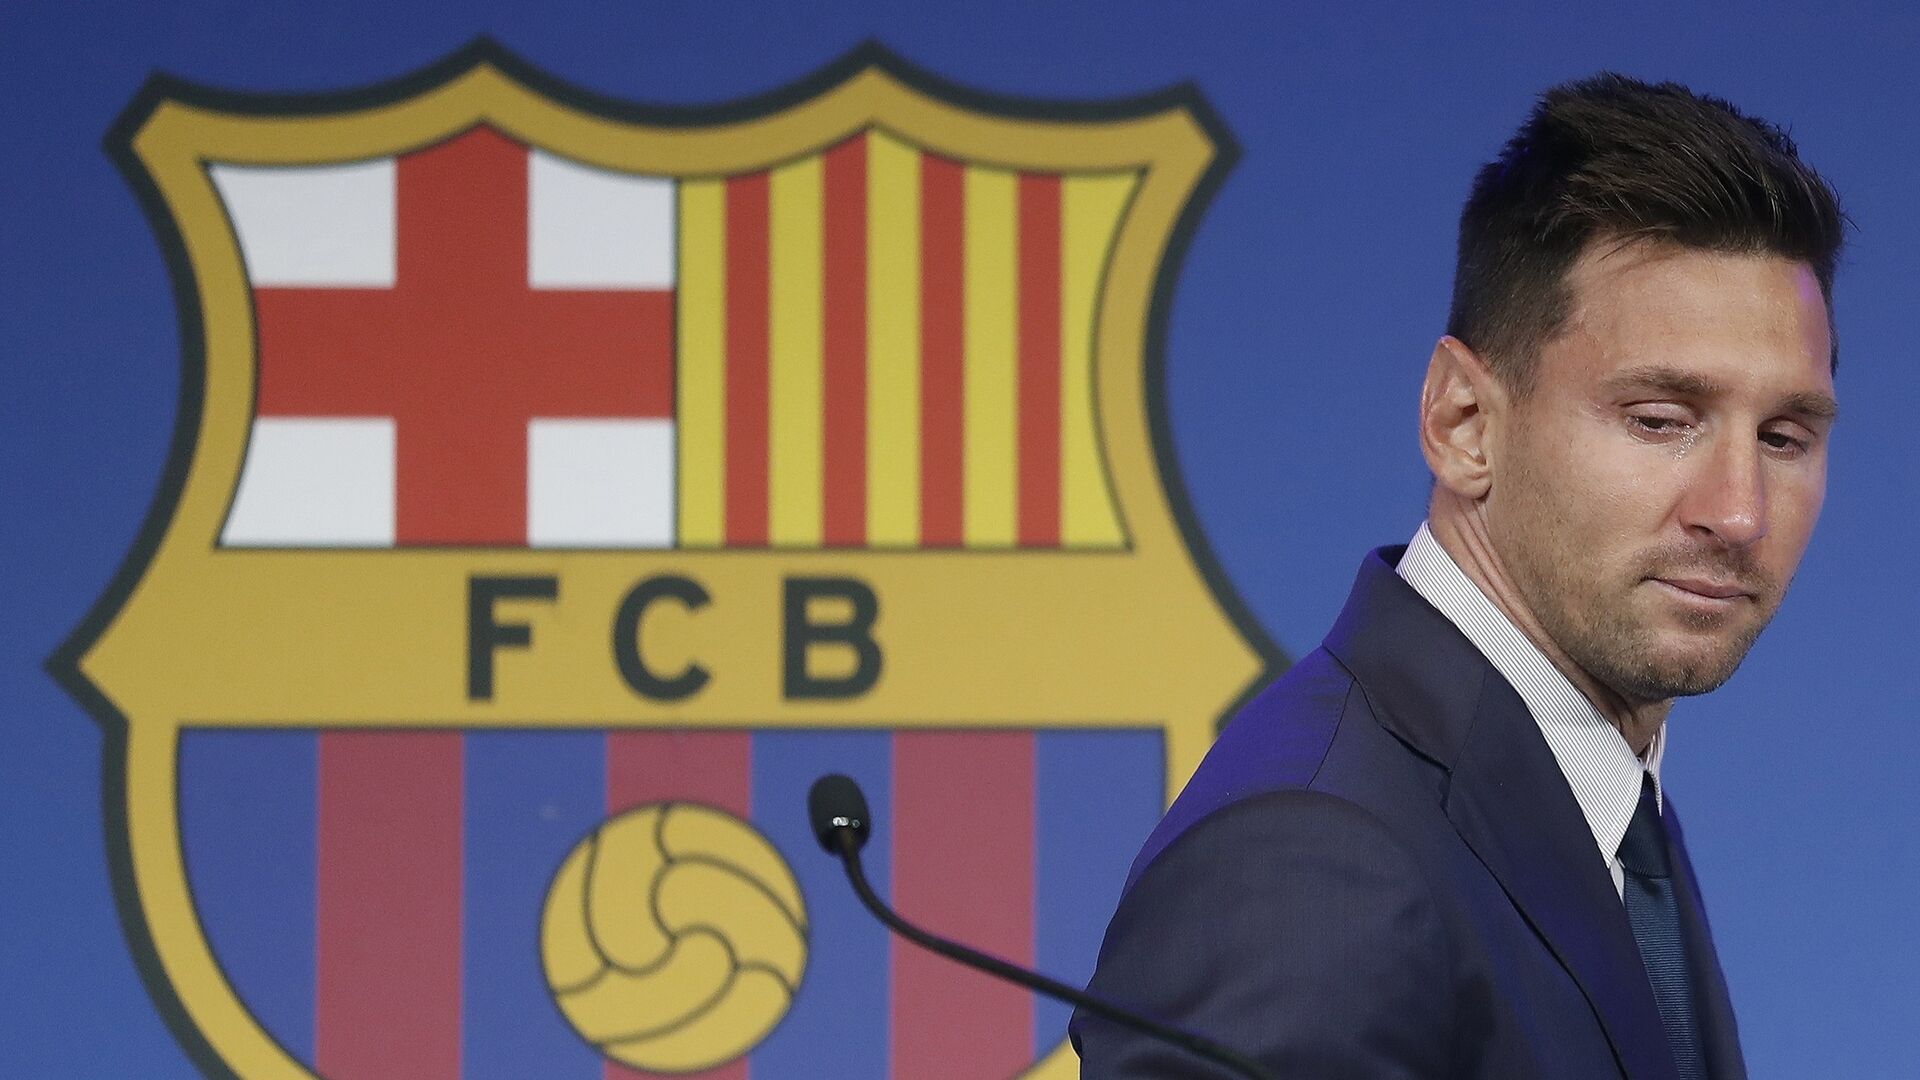 Las im&aacute;genes de la despedida de Messi del Barcelona